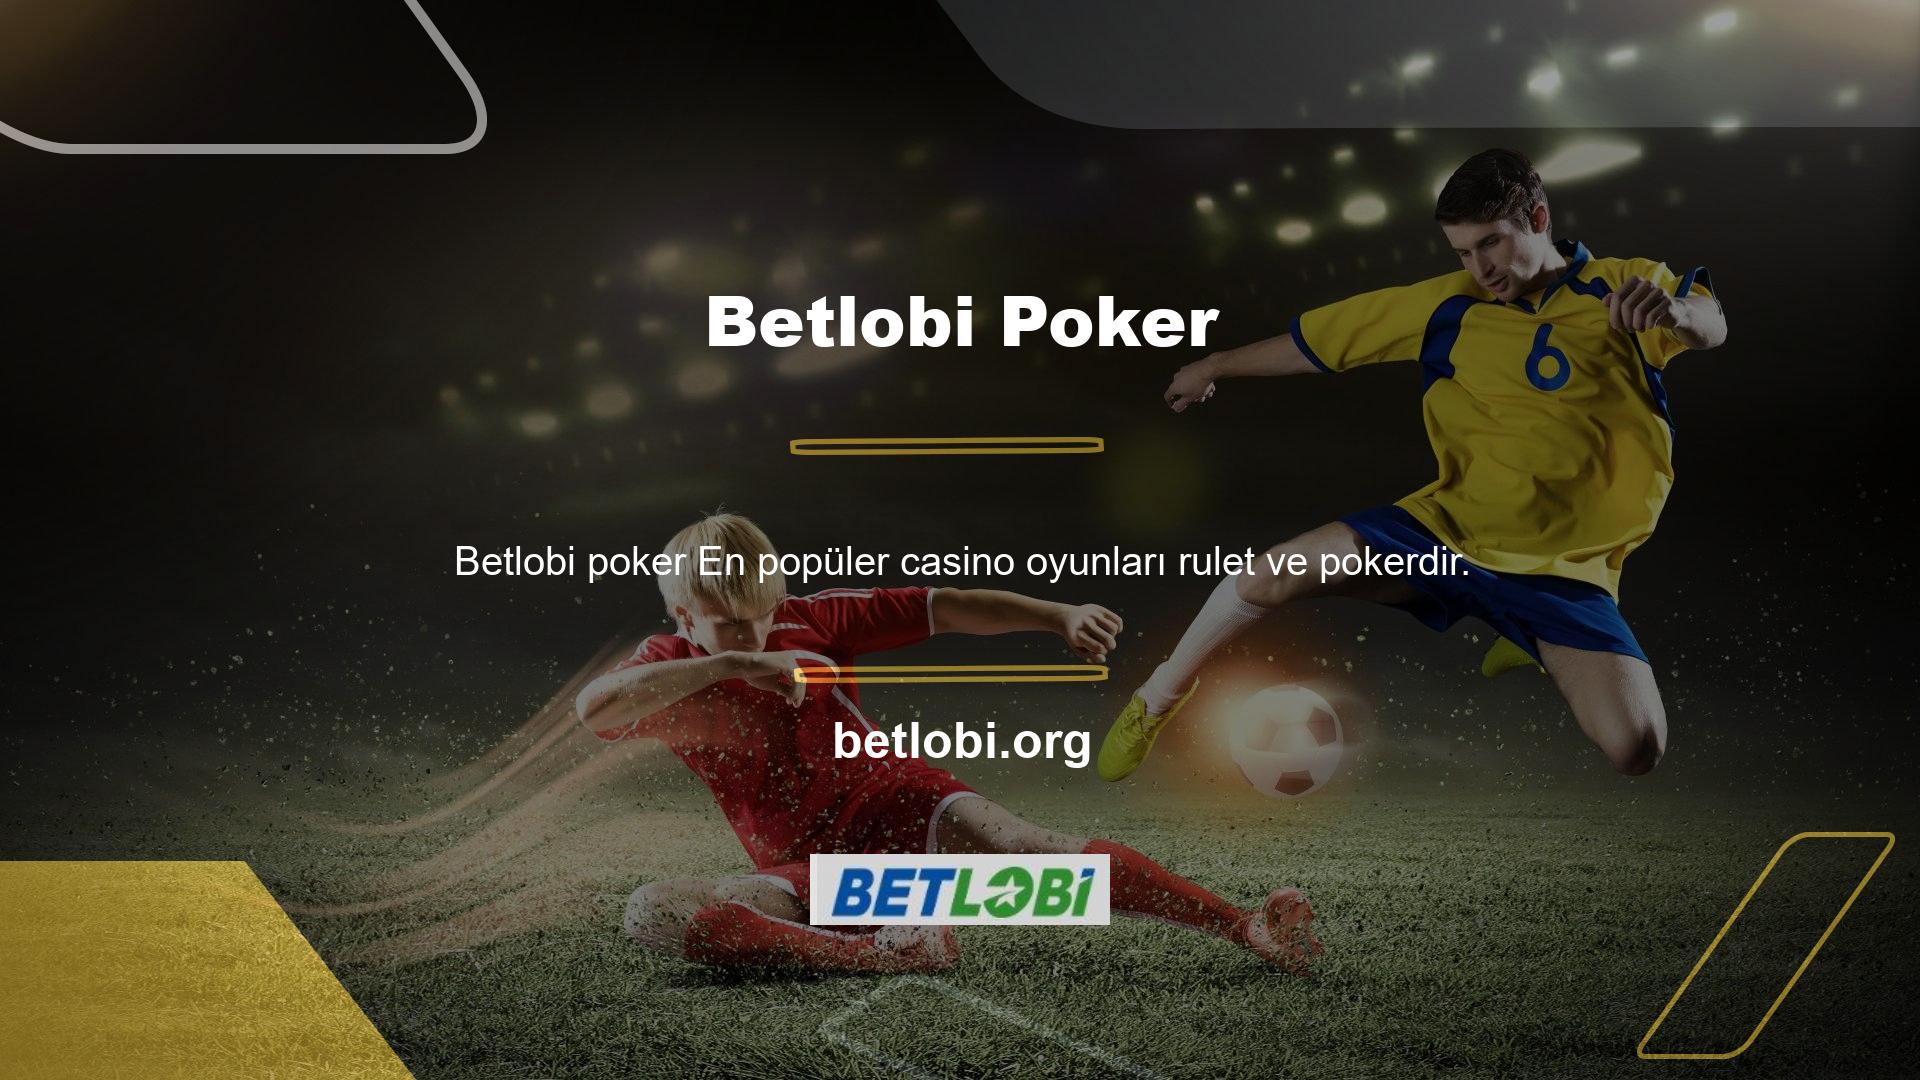 Betlobi poker oyunları en çok kazandıran casino oyunlarıdır